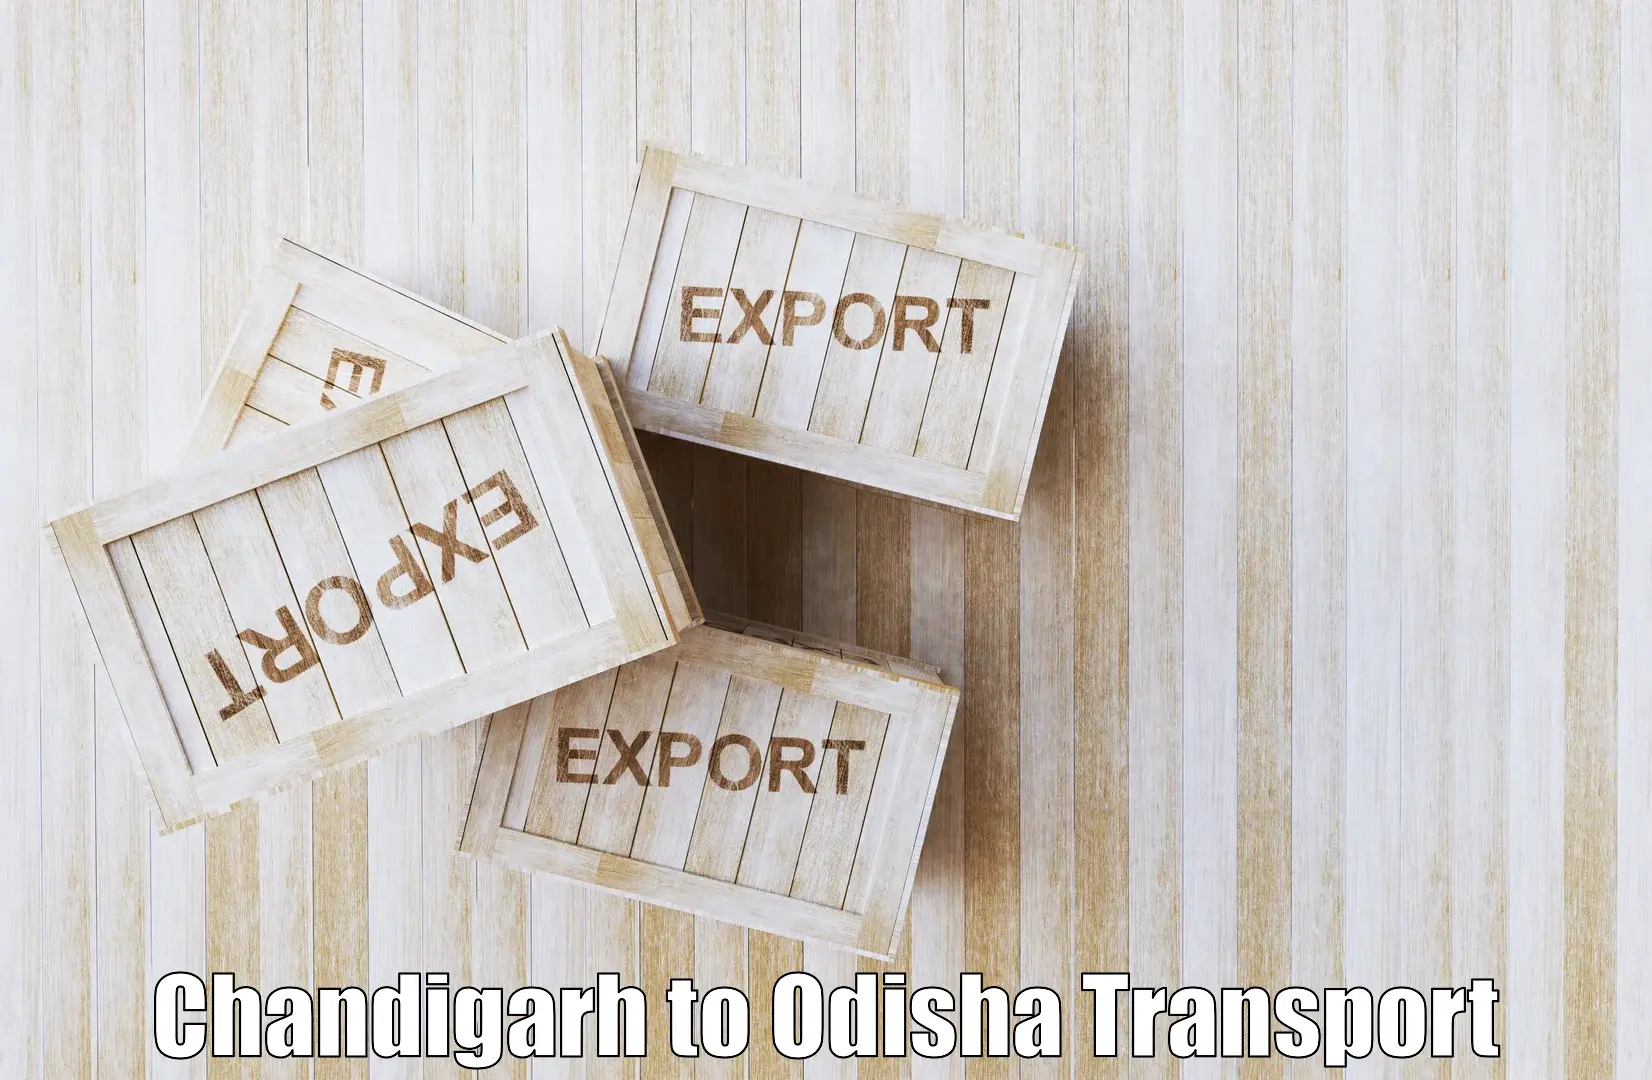 Interstate goods transport Chandigarh to Chandikhol